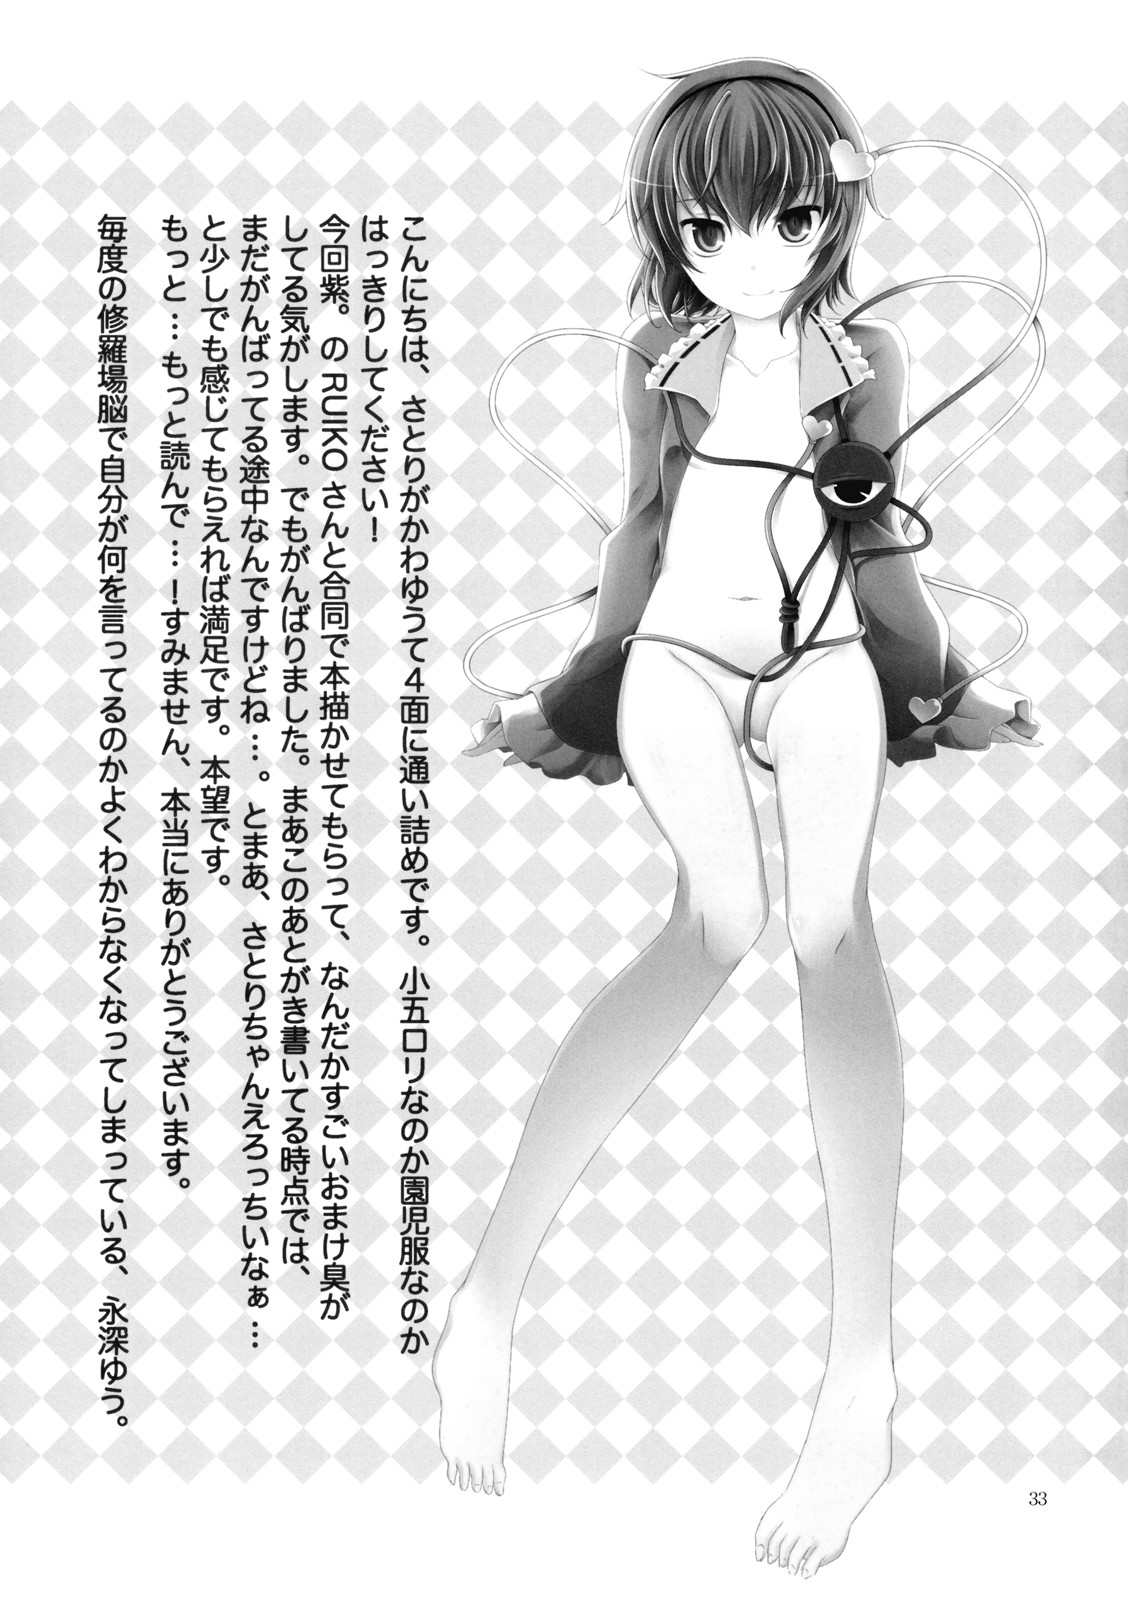 [Pinata Party & Murasaki] Nandaka Totte mo Setsuna Ino... (Touhou) page 33 full